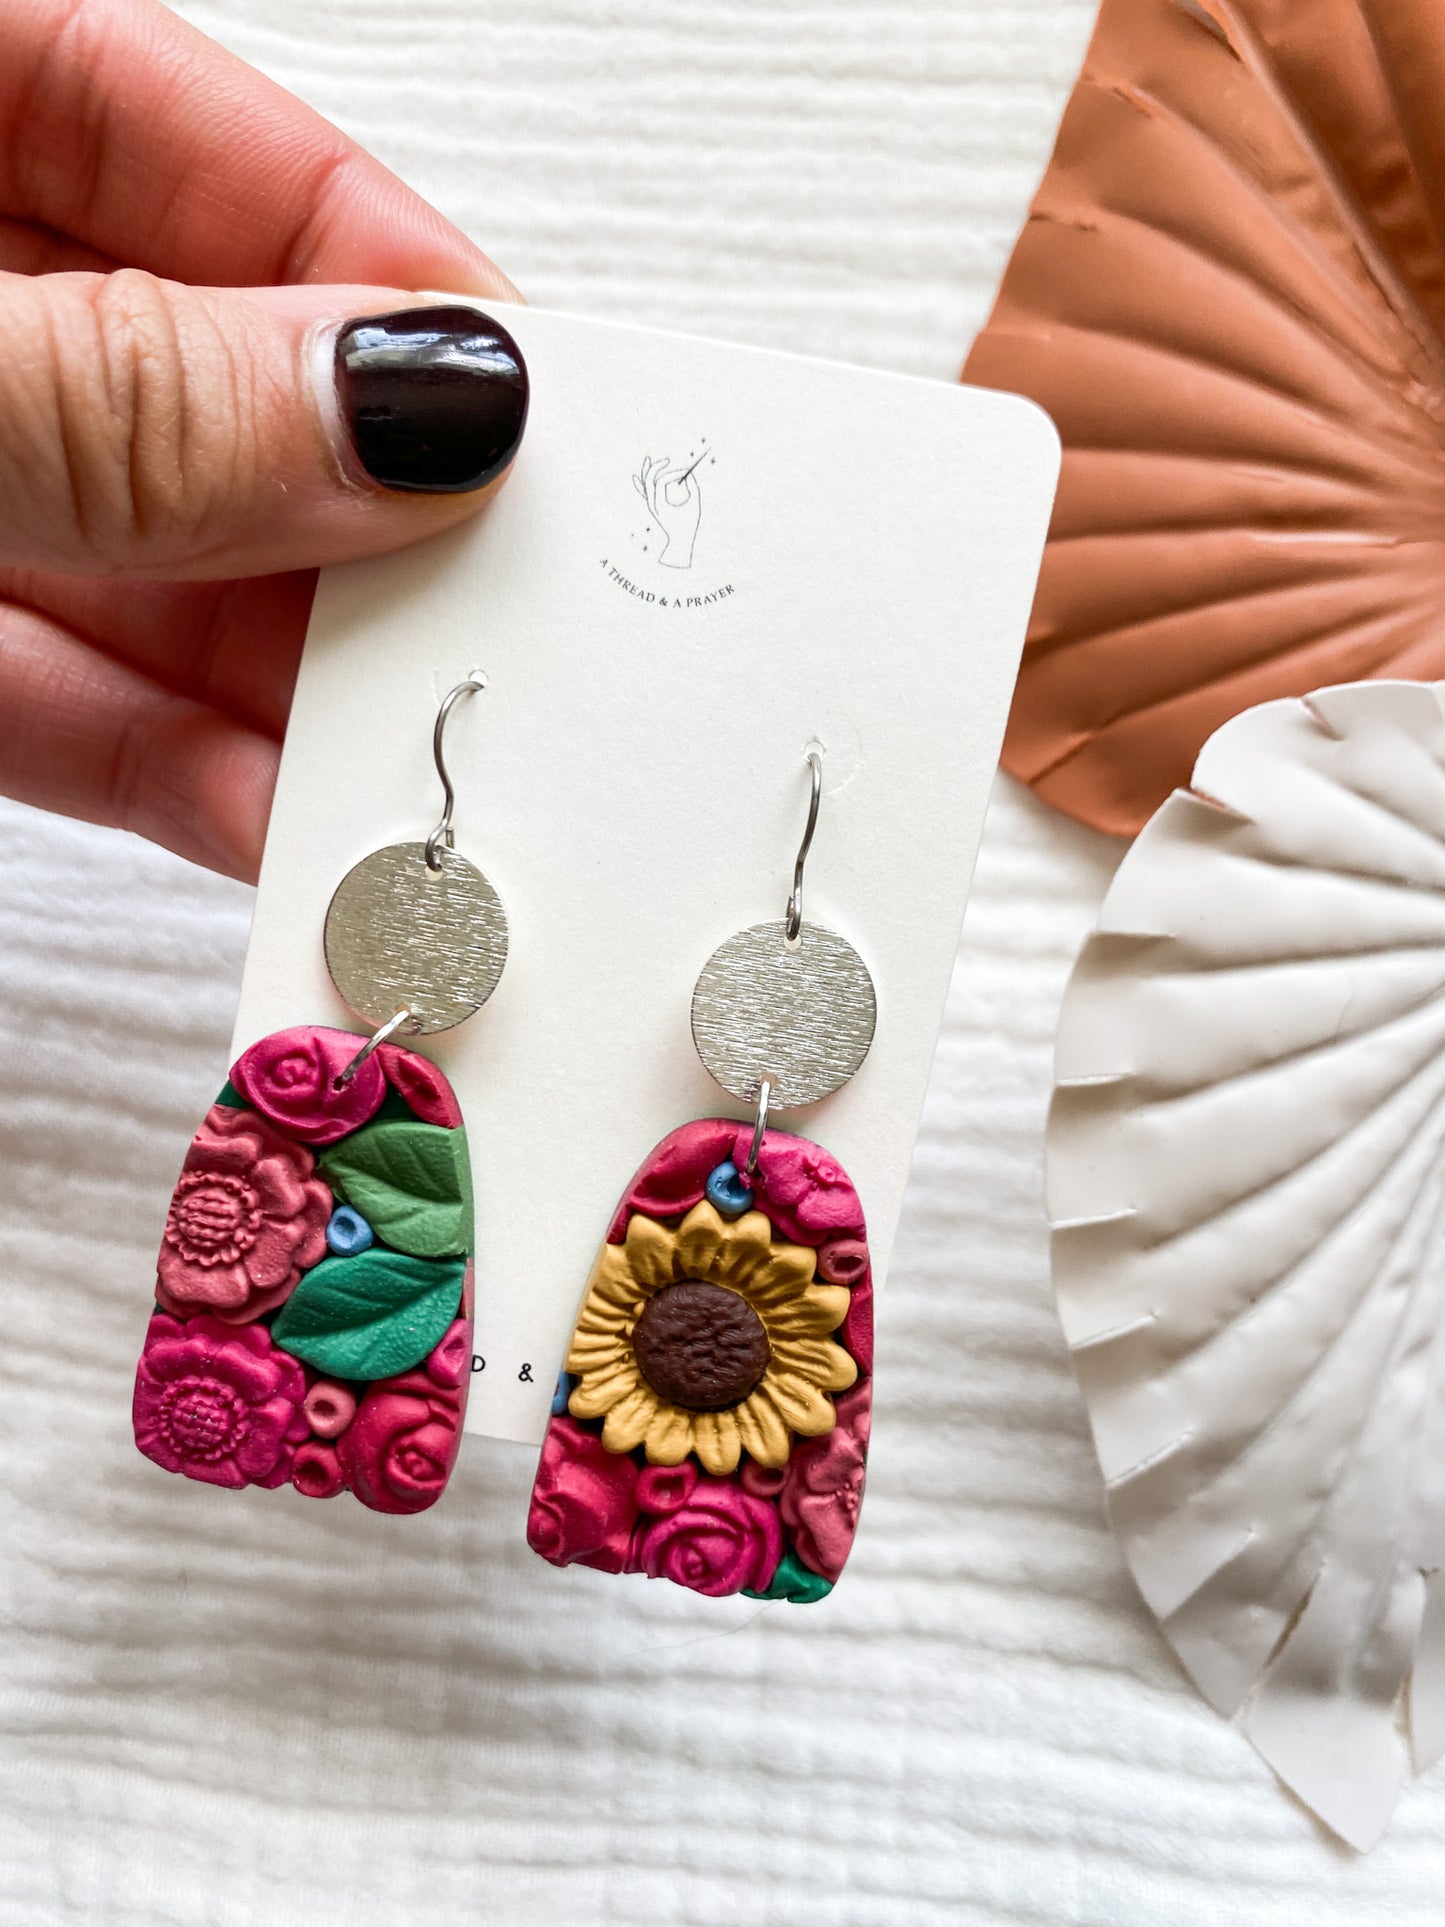 Set 1 | Flower Garden Earrings | Dangle Clay Earrings